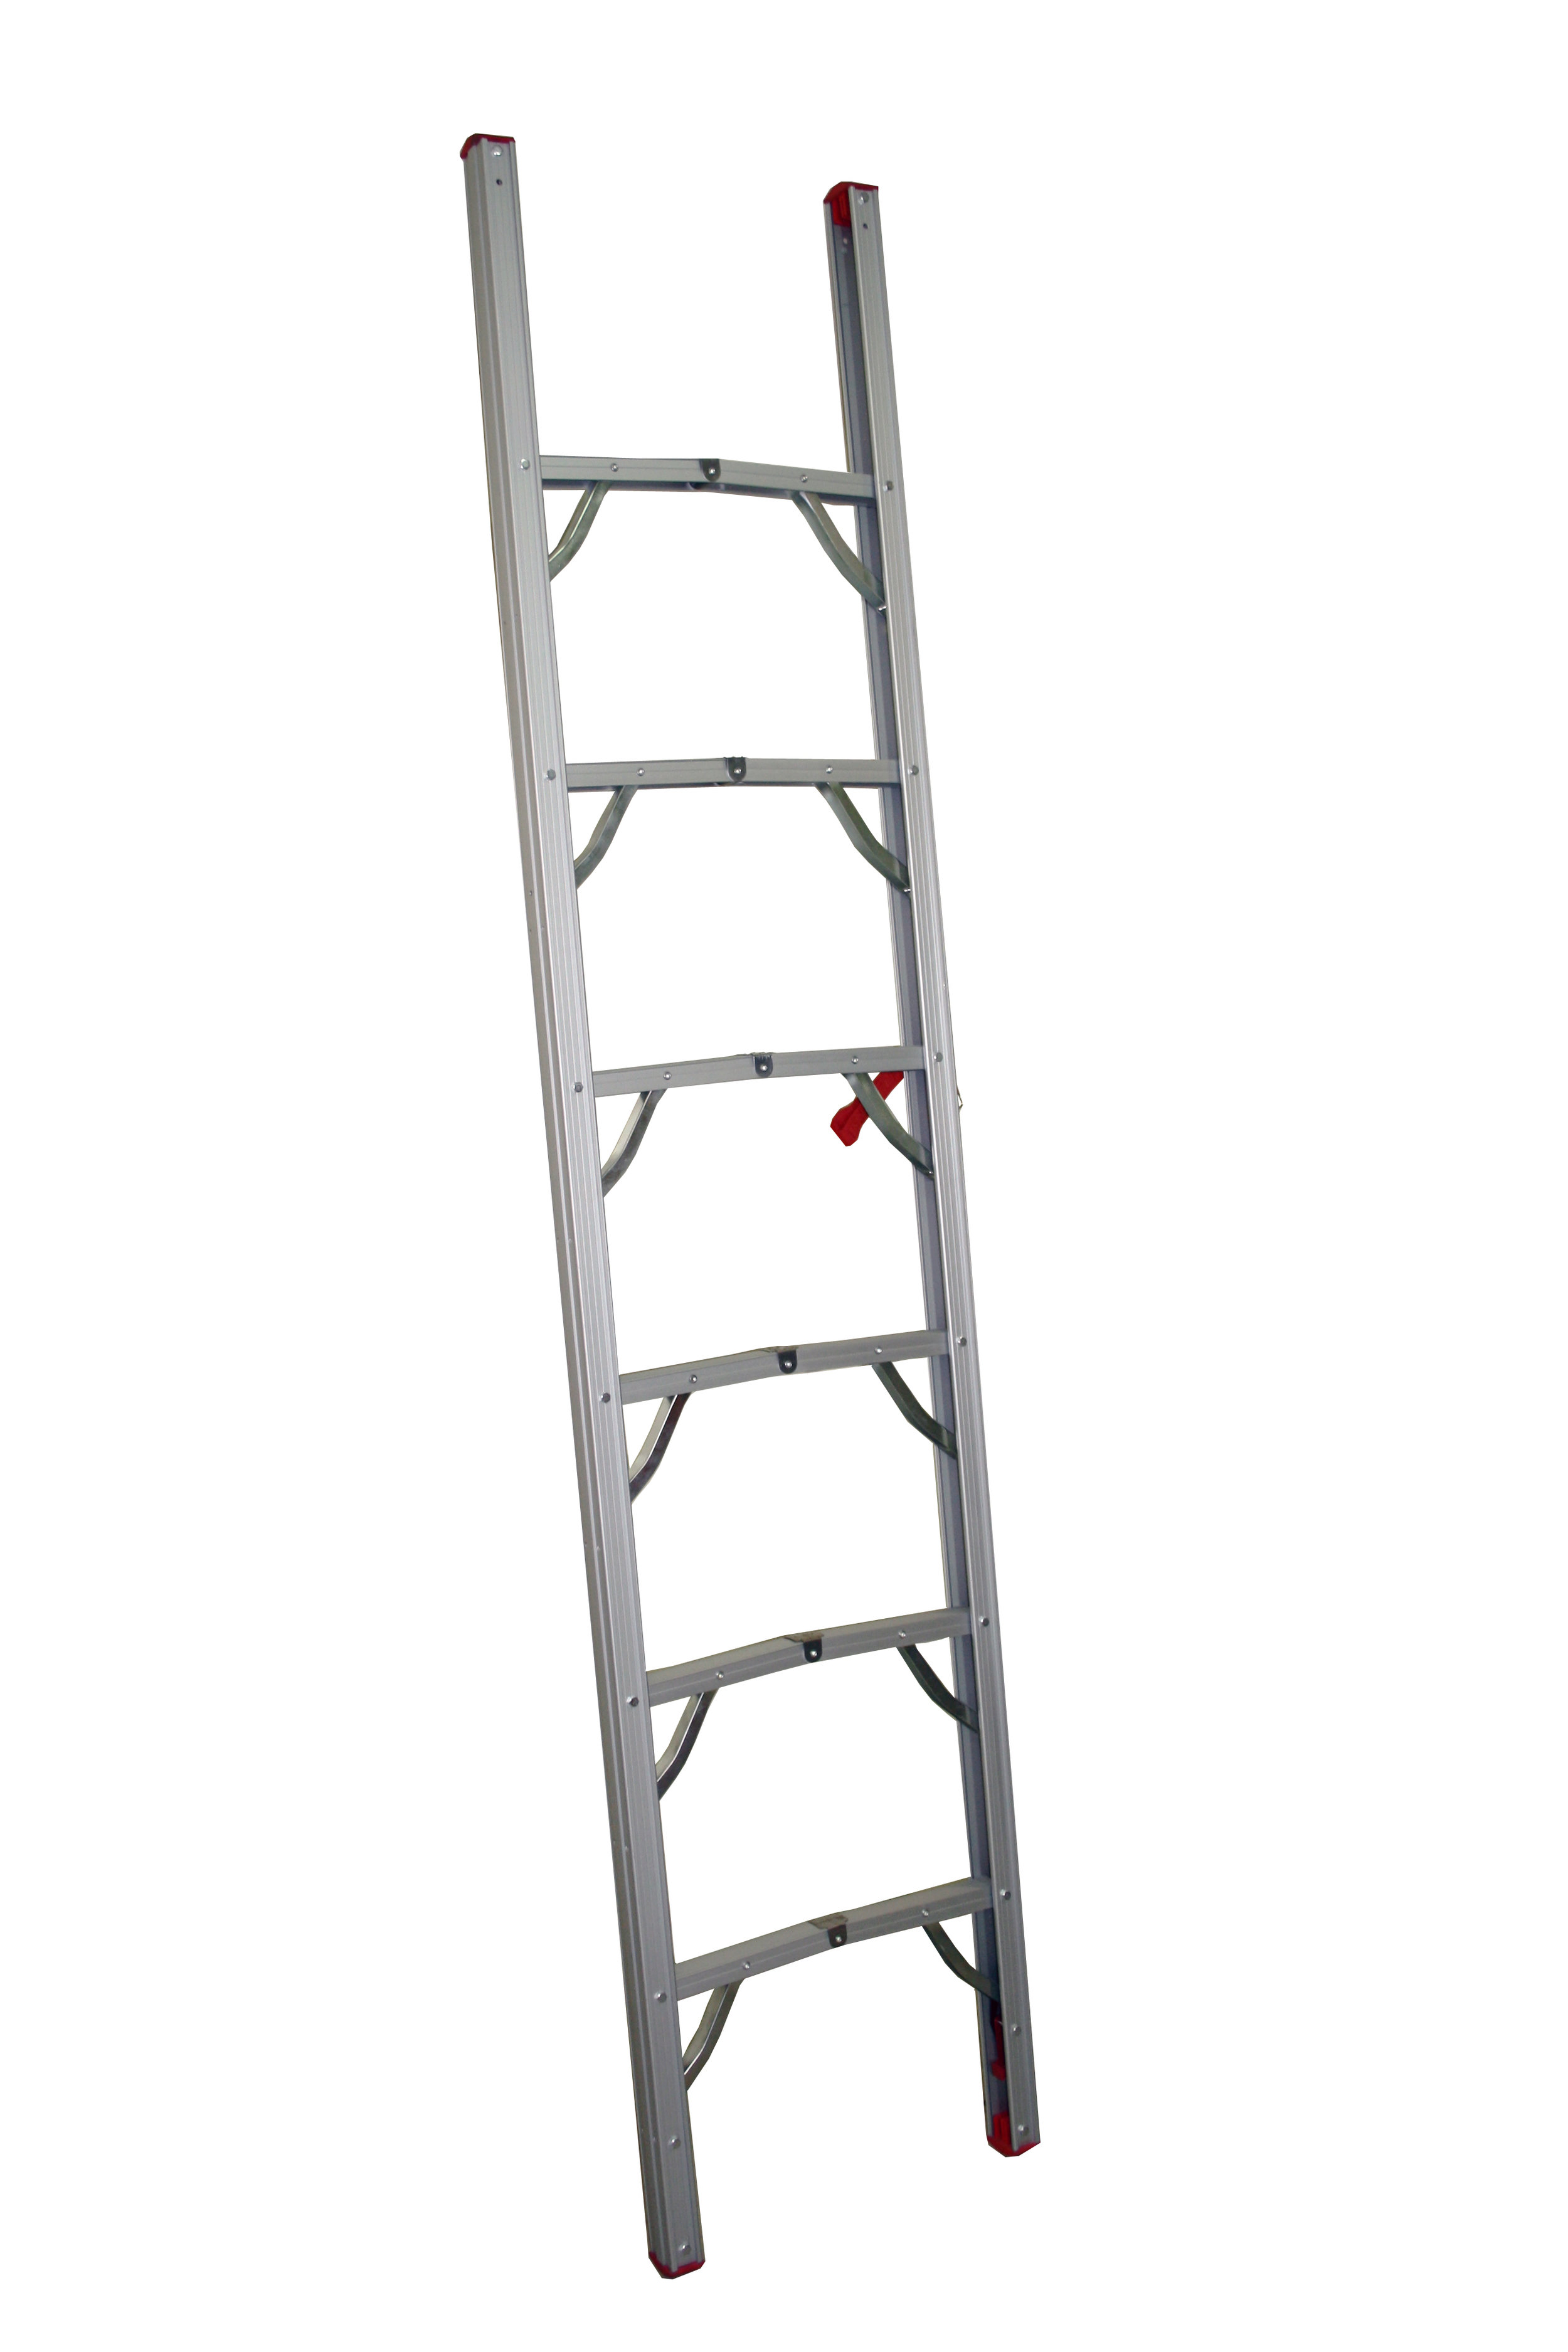 Extended-Folded Ladder.jpg